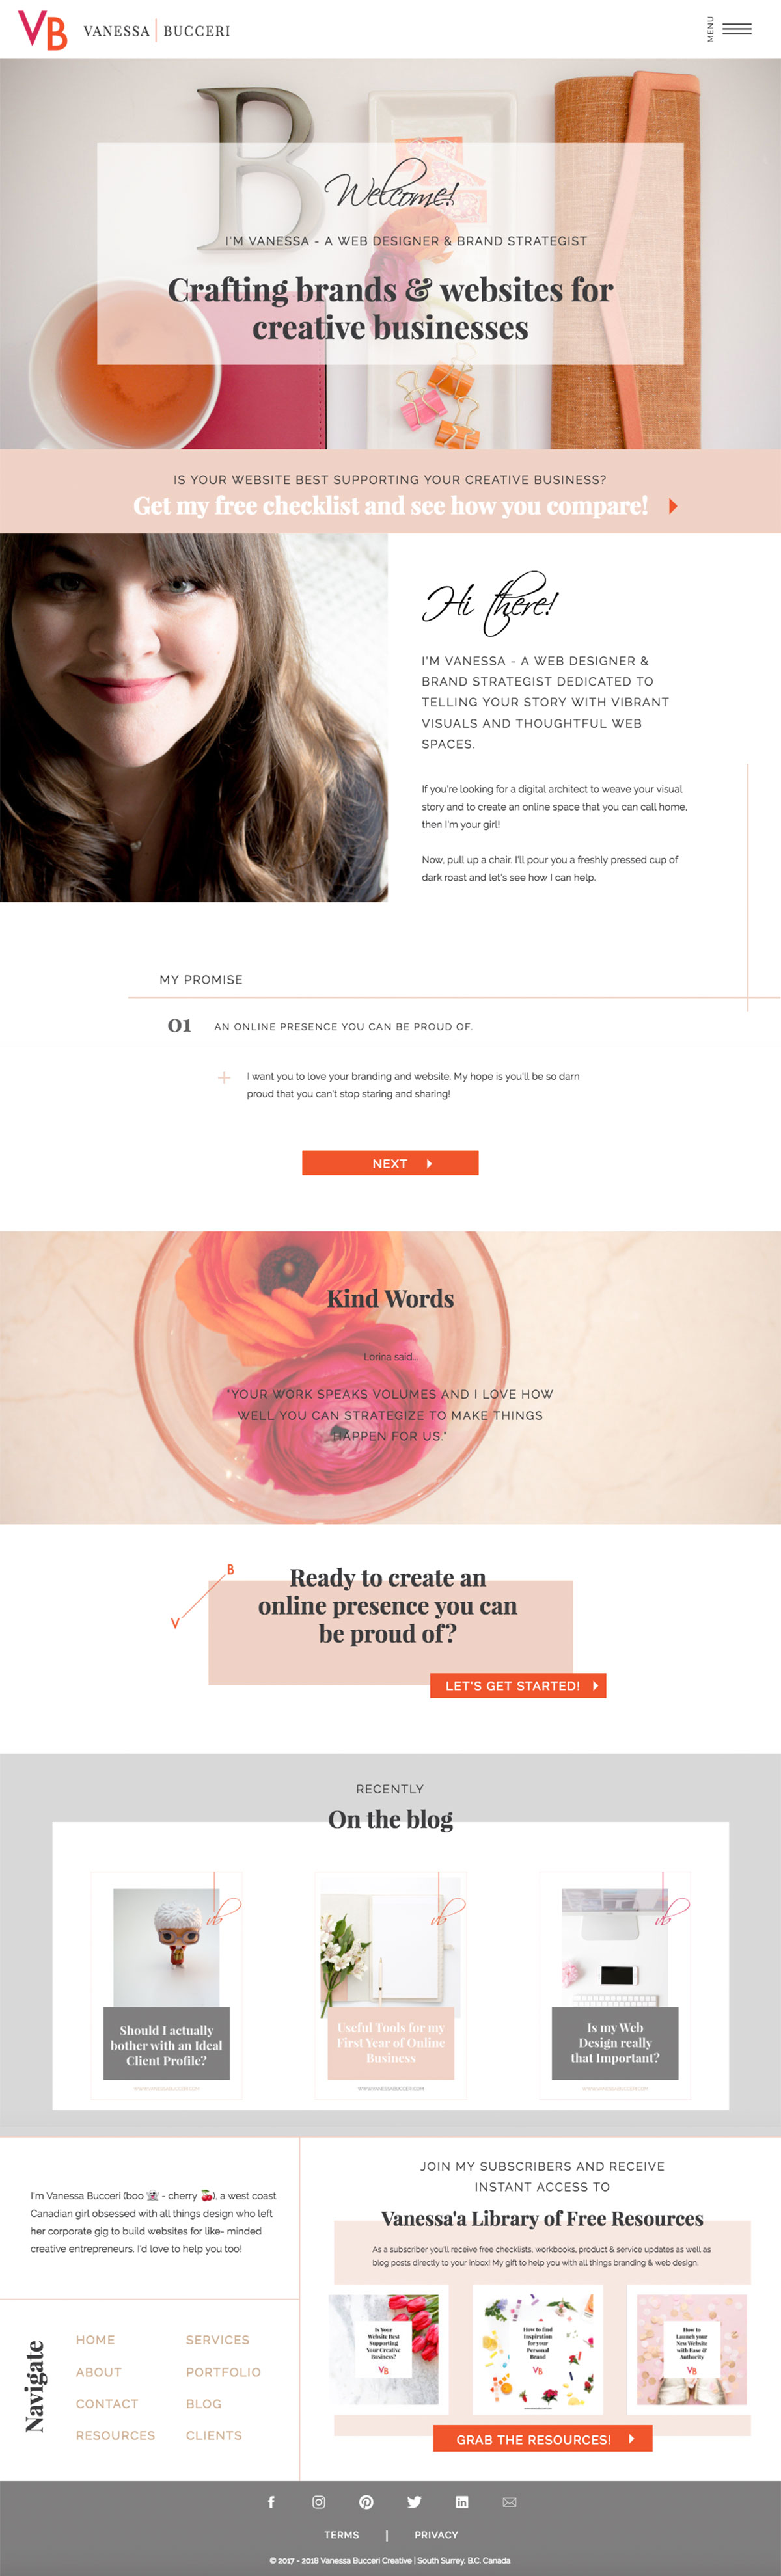 Final Website Design for Vanessa Bucceri Creative | Branding & Web Design Studio